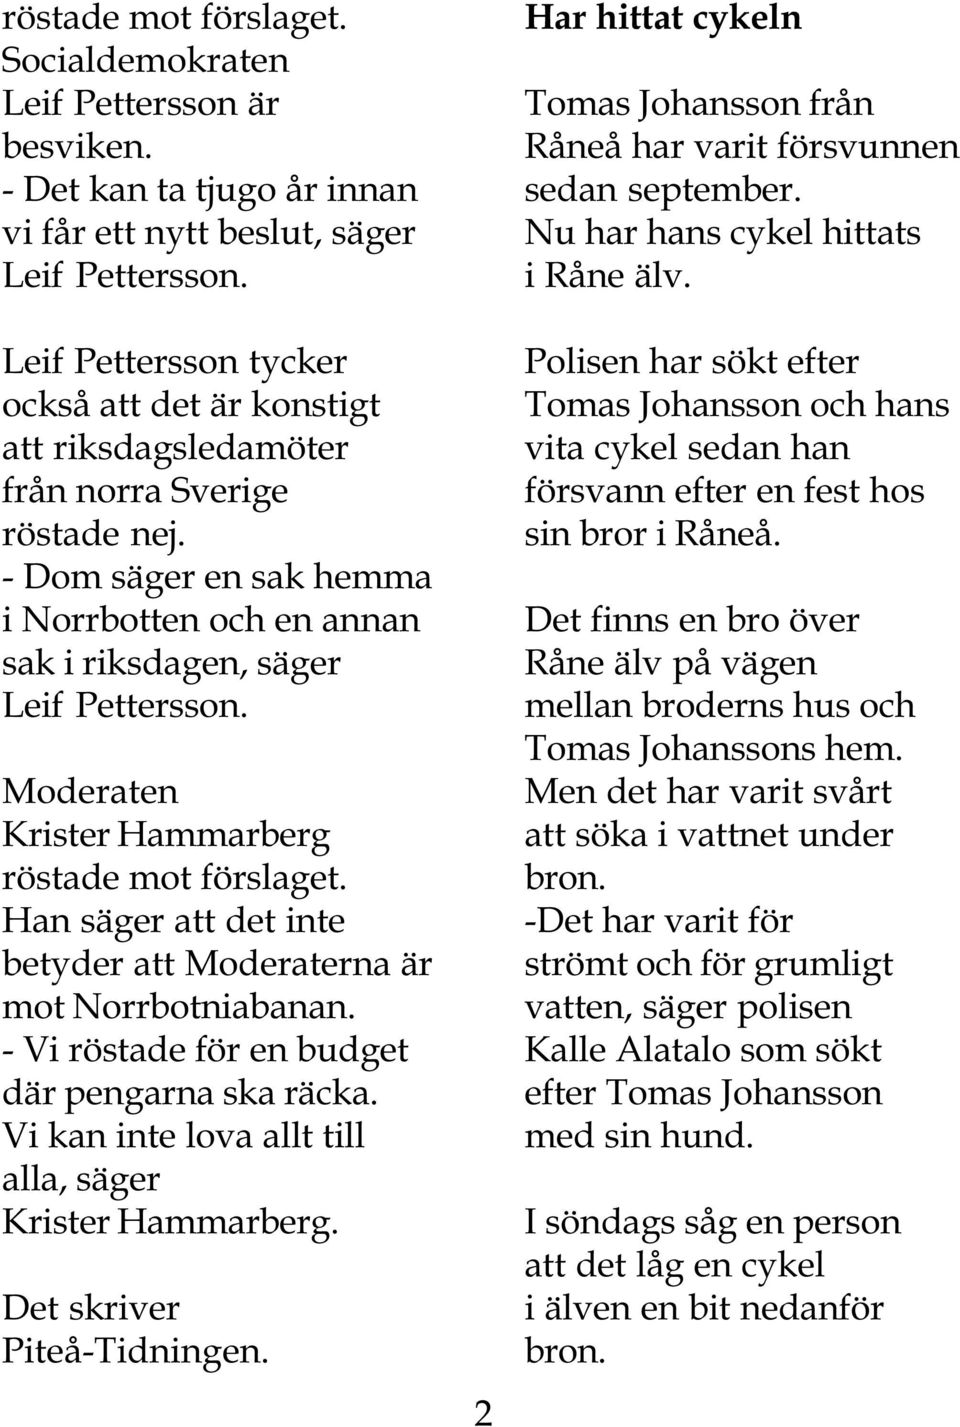 Moderaten Krister Hammarberg röstade mot förslaget. Han säger att det inte betyder att Moderaterna är mot Norrbotniabanan. - Vi röstade för en budget där pengarna ska räcka.